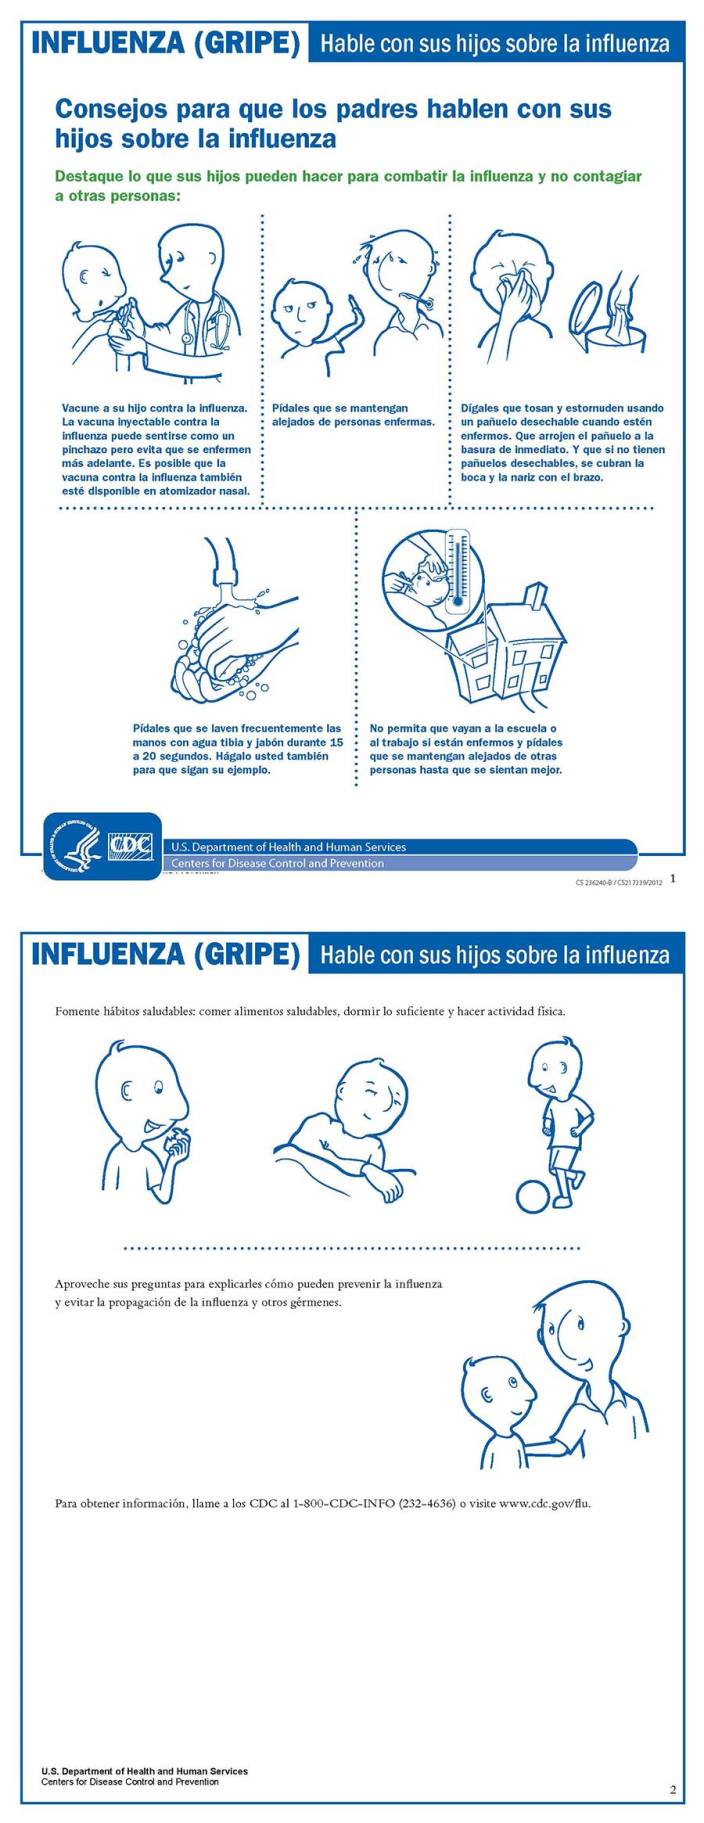 Hable con sus hijos sobre la influenza